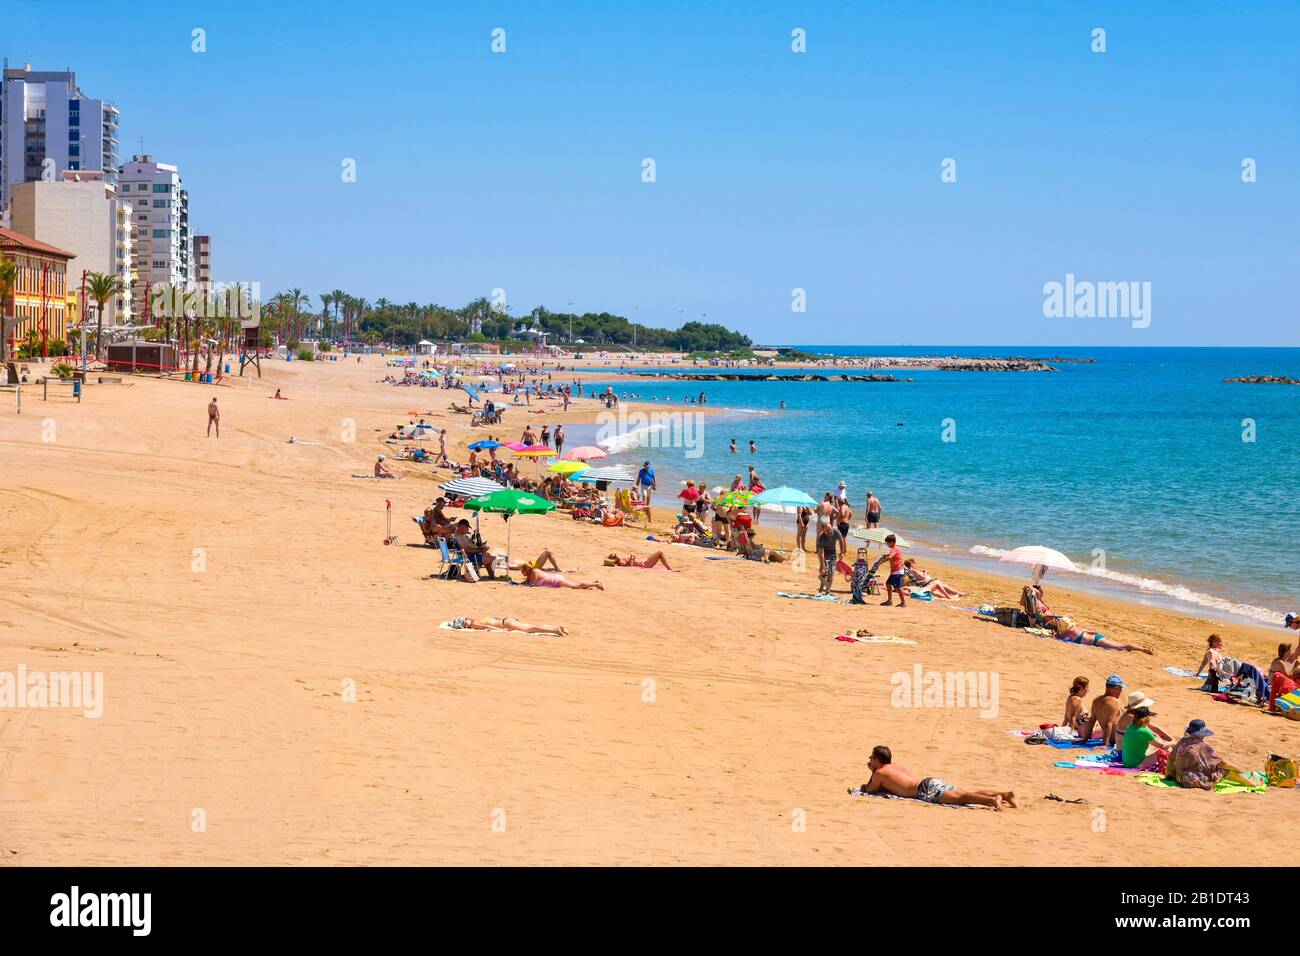 Vinaros, SPANIEN - 12. JUNI 2017: Menschen, die das warme Wetter am Strand Playa del Forti in Vinaros an der Costa del Azahar in Spanien genießen Stockfoto